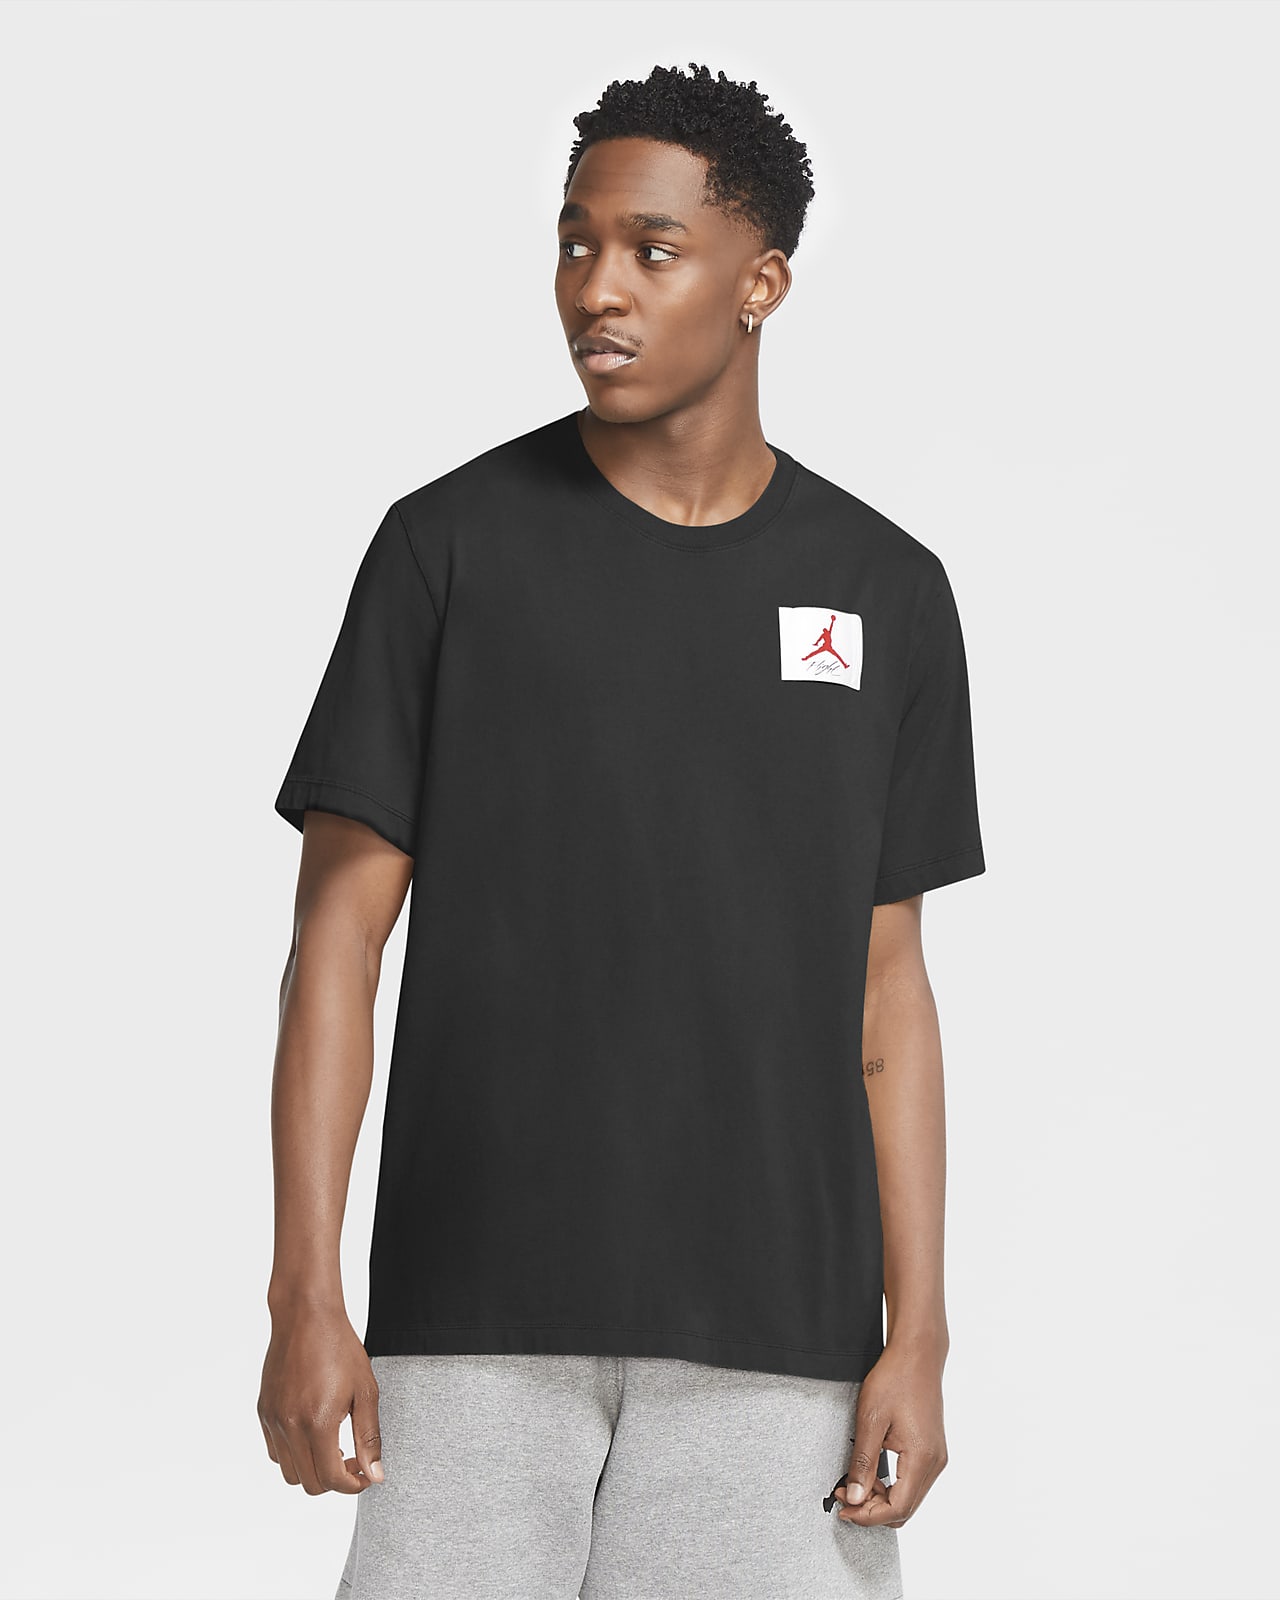 Short-Sleeve T-Shirt. Nike FI